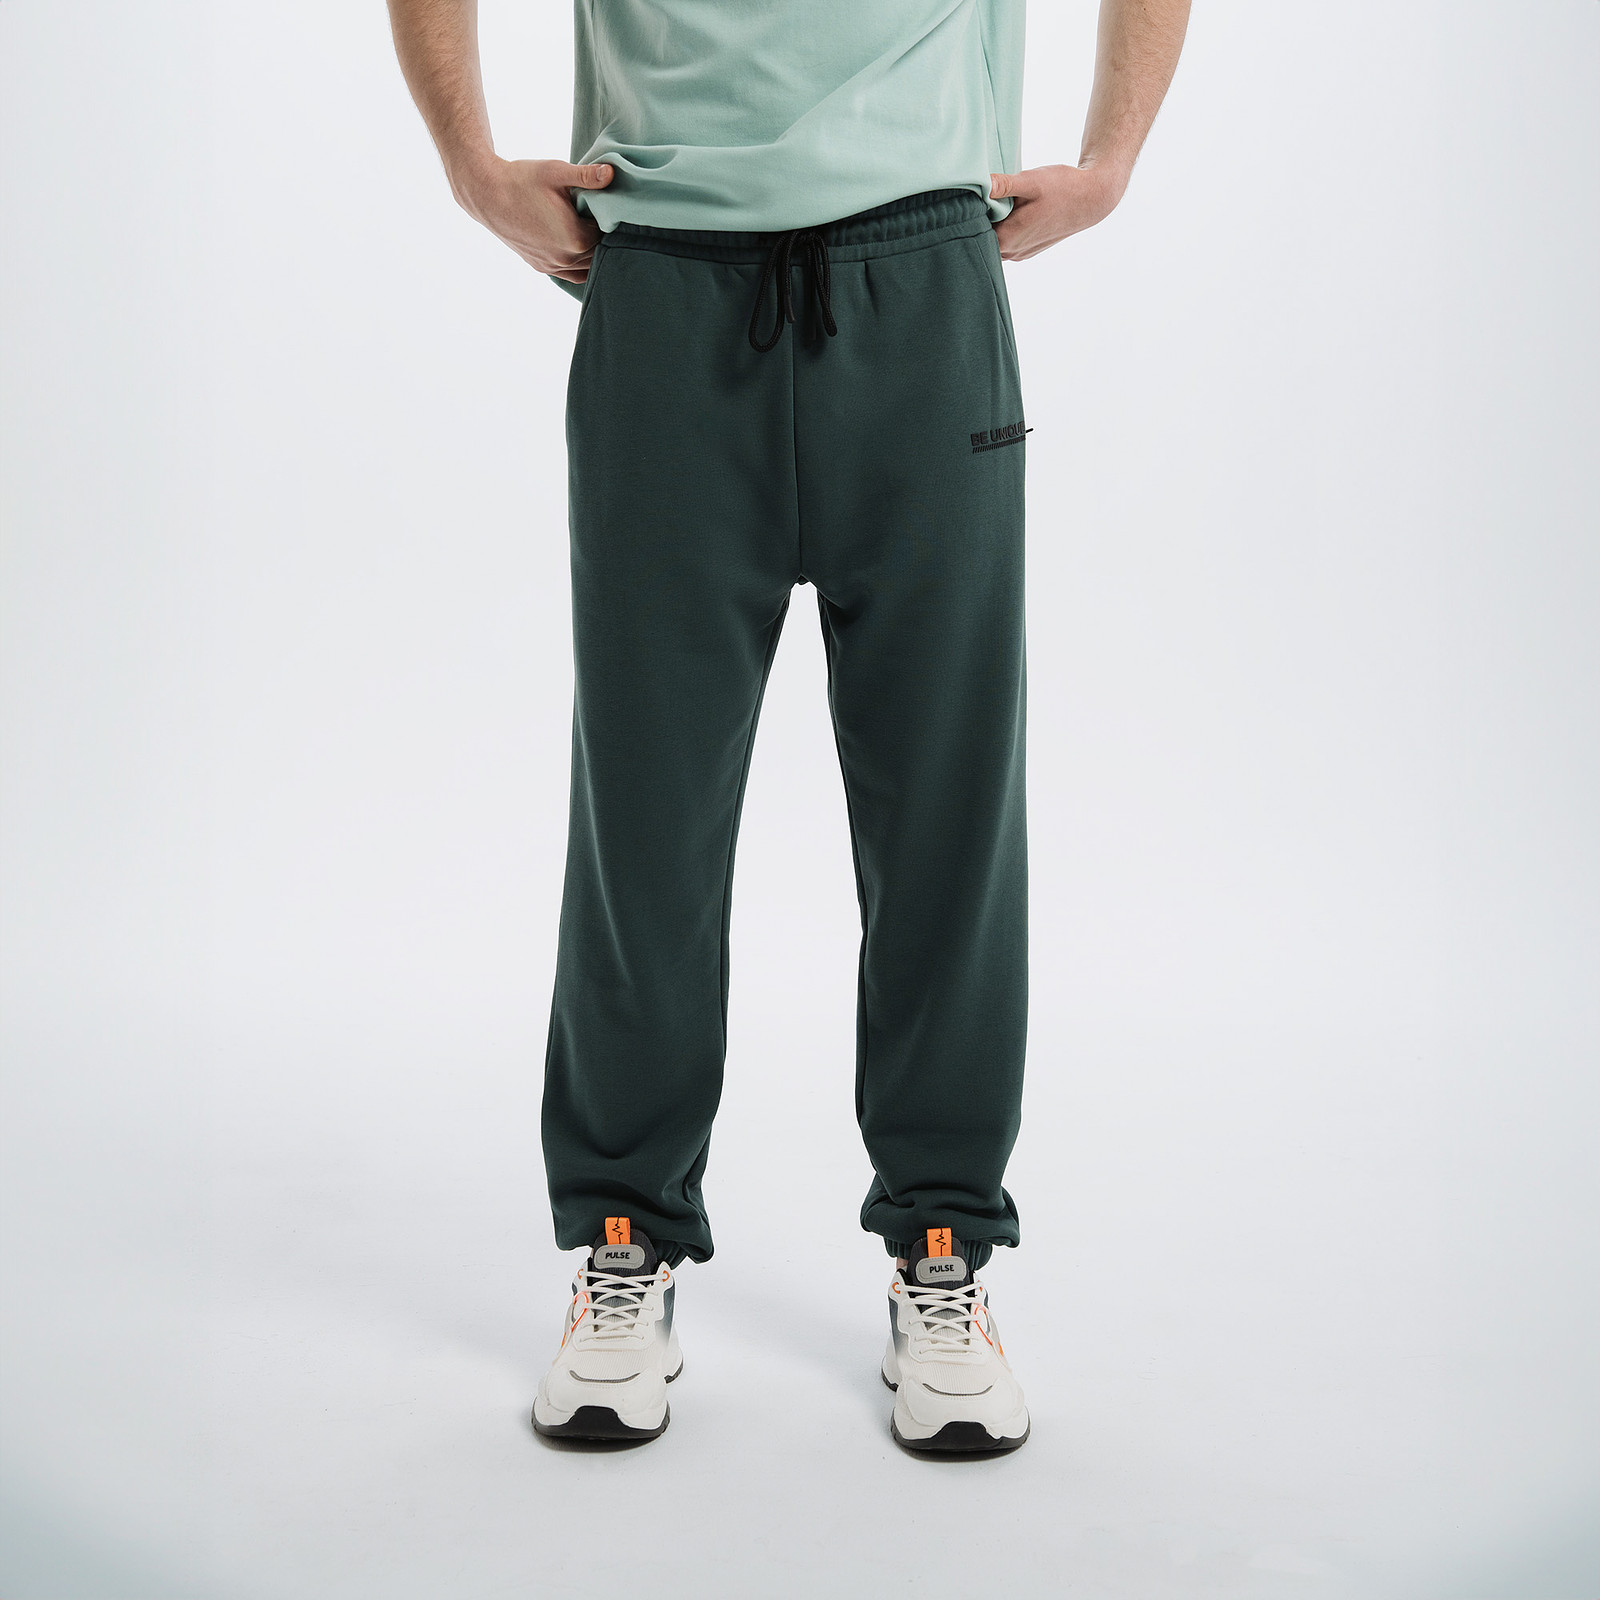 Спортивные брюки мужские PULSE 41MP-P33 зеленые M